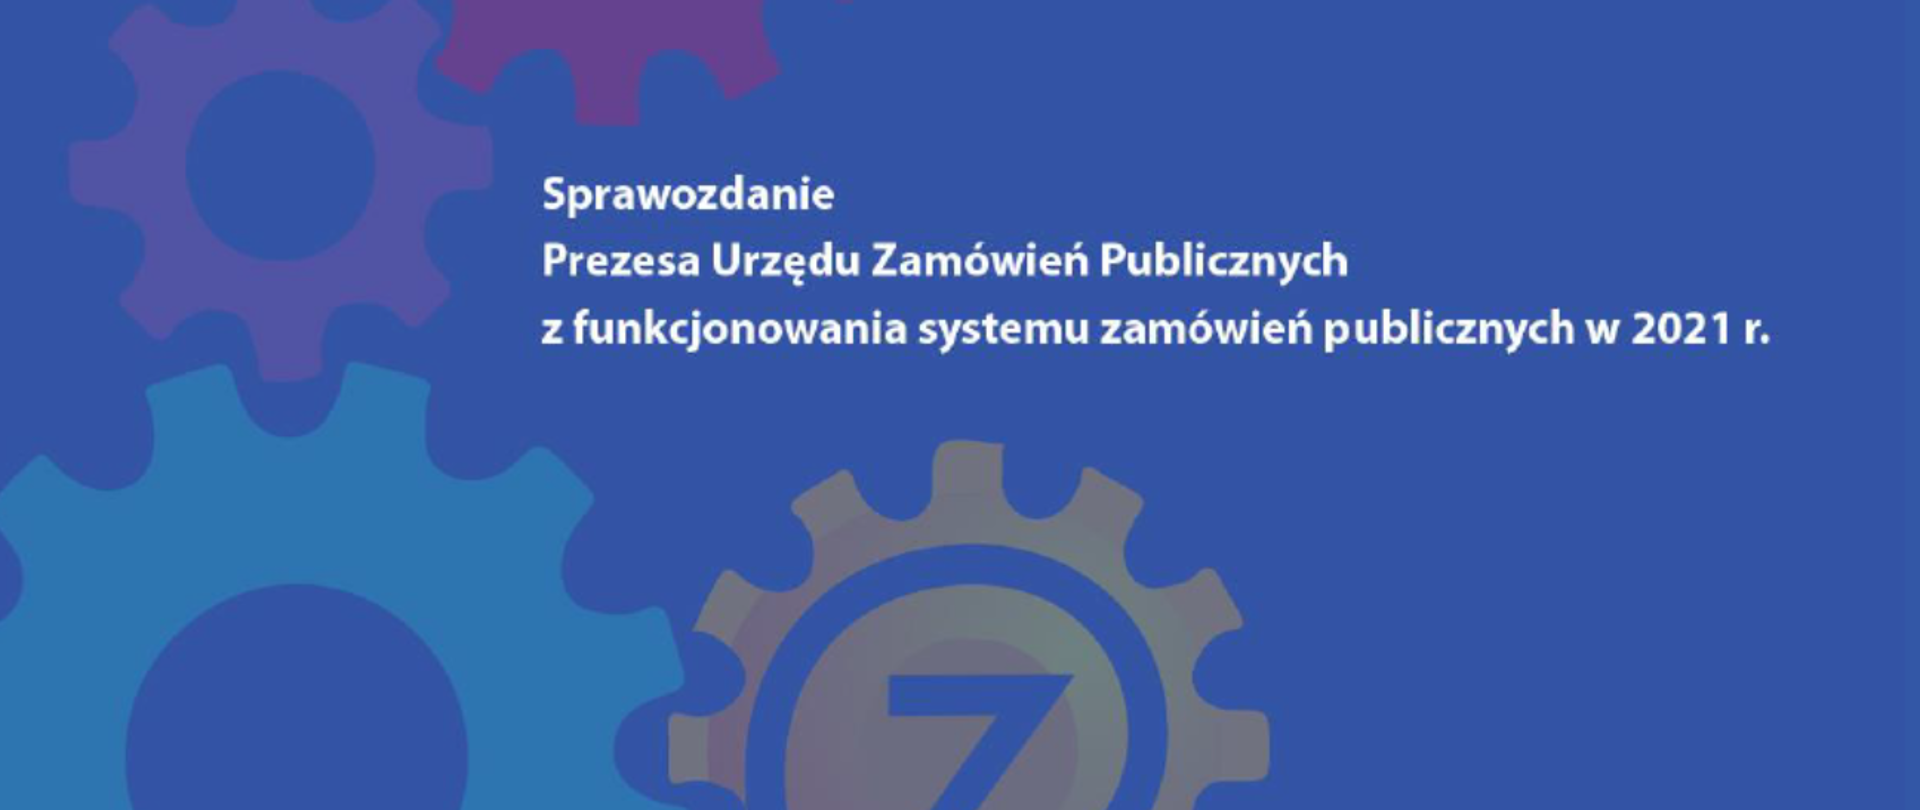 Sprawozdanie Prezesa Urzędu Zamówień Publicznych z funkcjonowania systemu zamówień publicznych w 2021 r